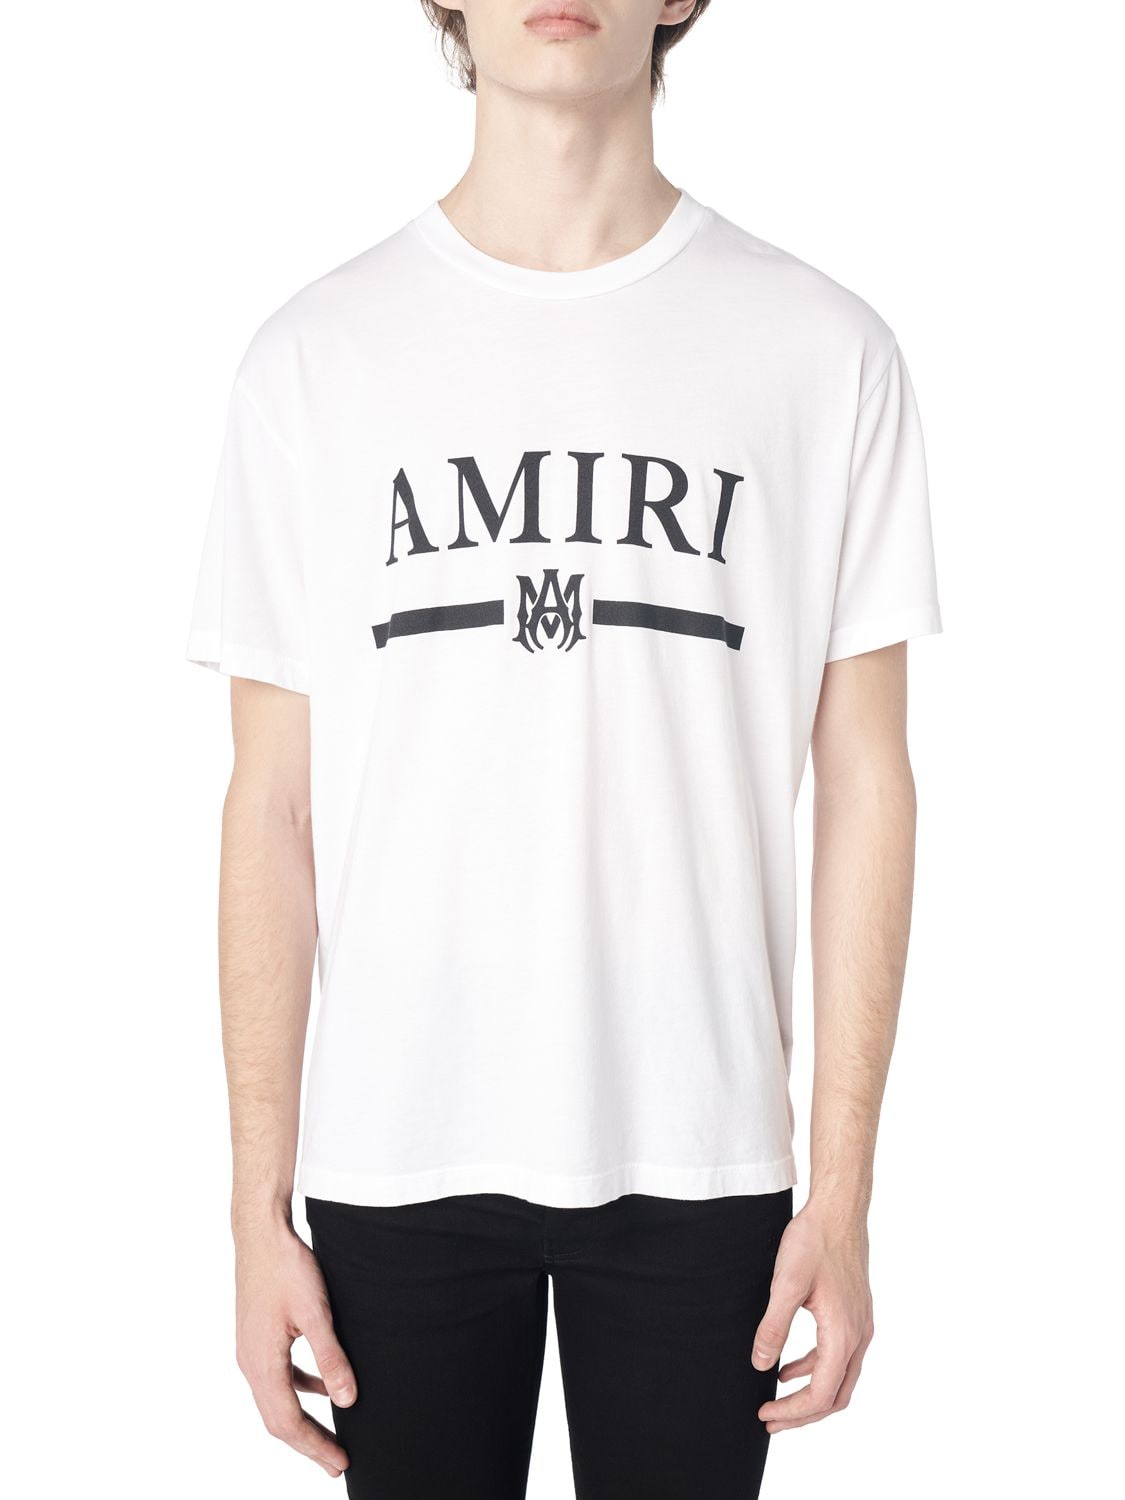 AMIRI T-Shirts for Men | ModeSens